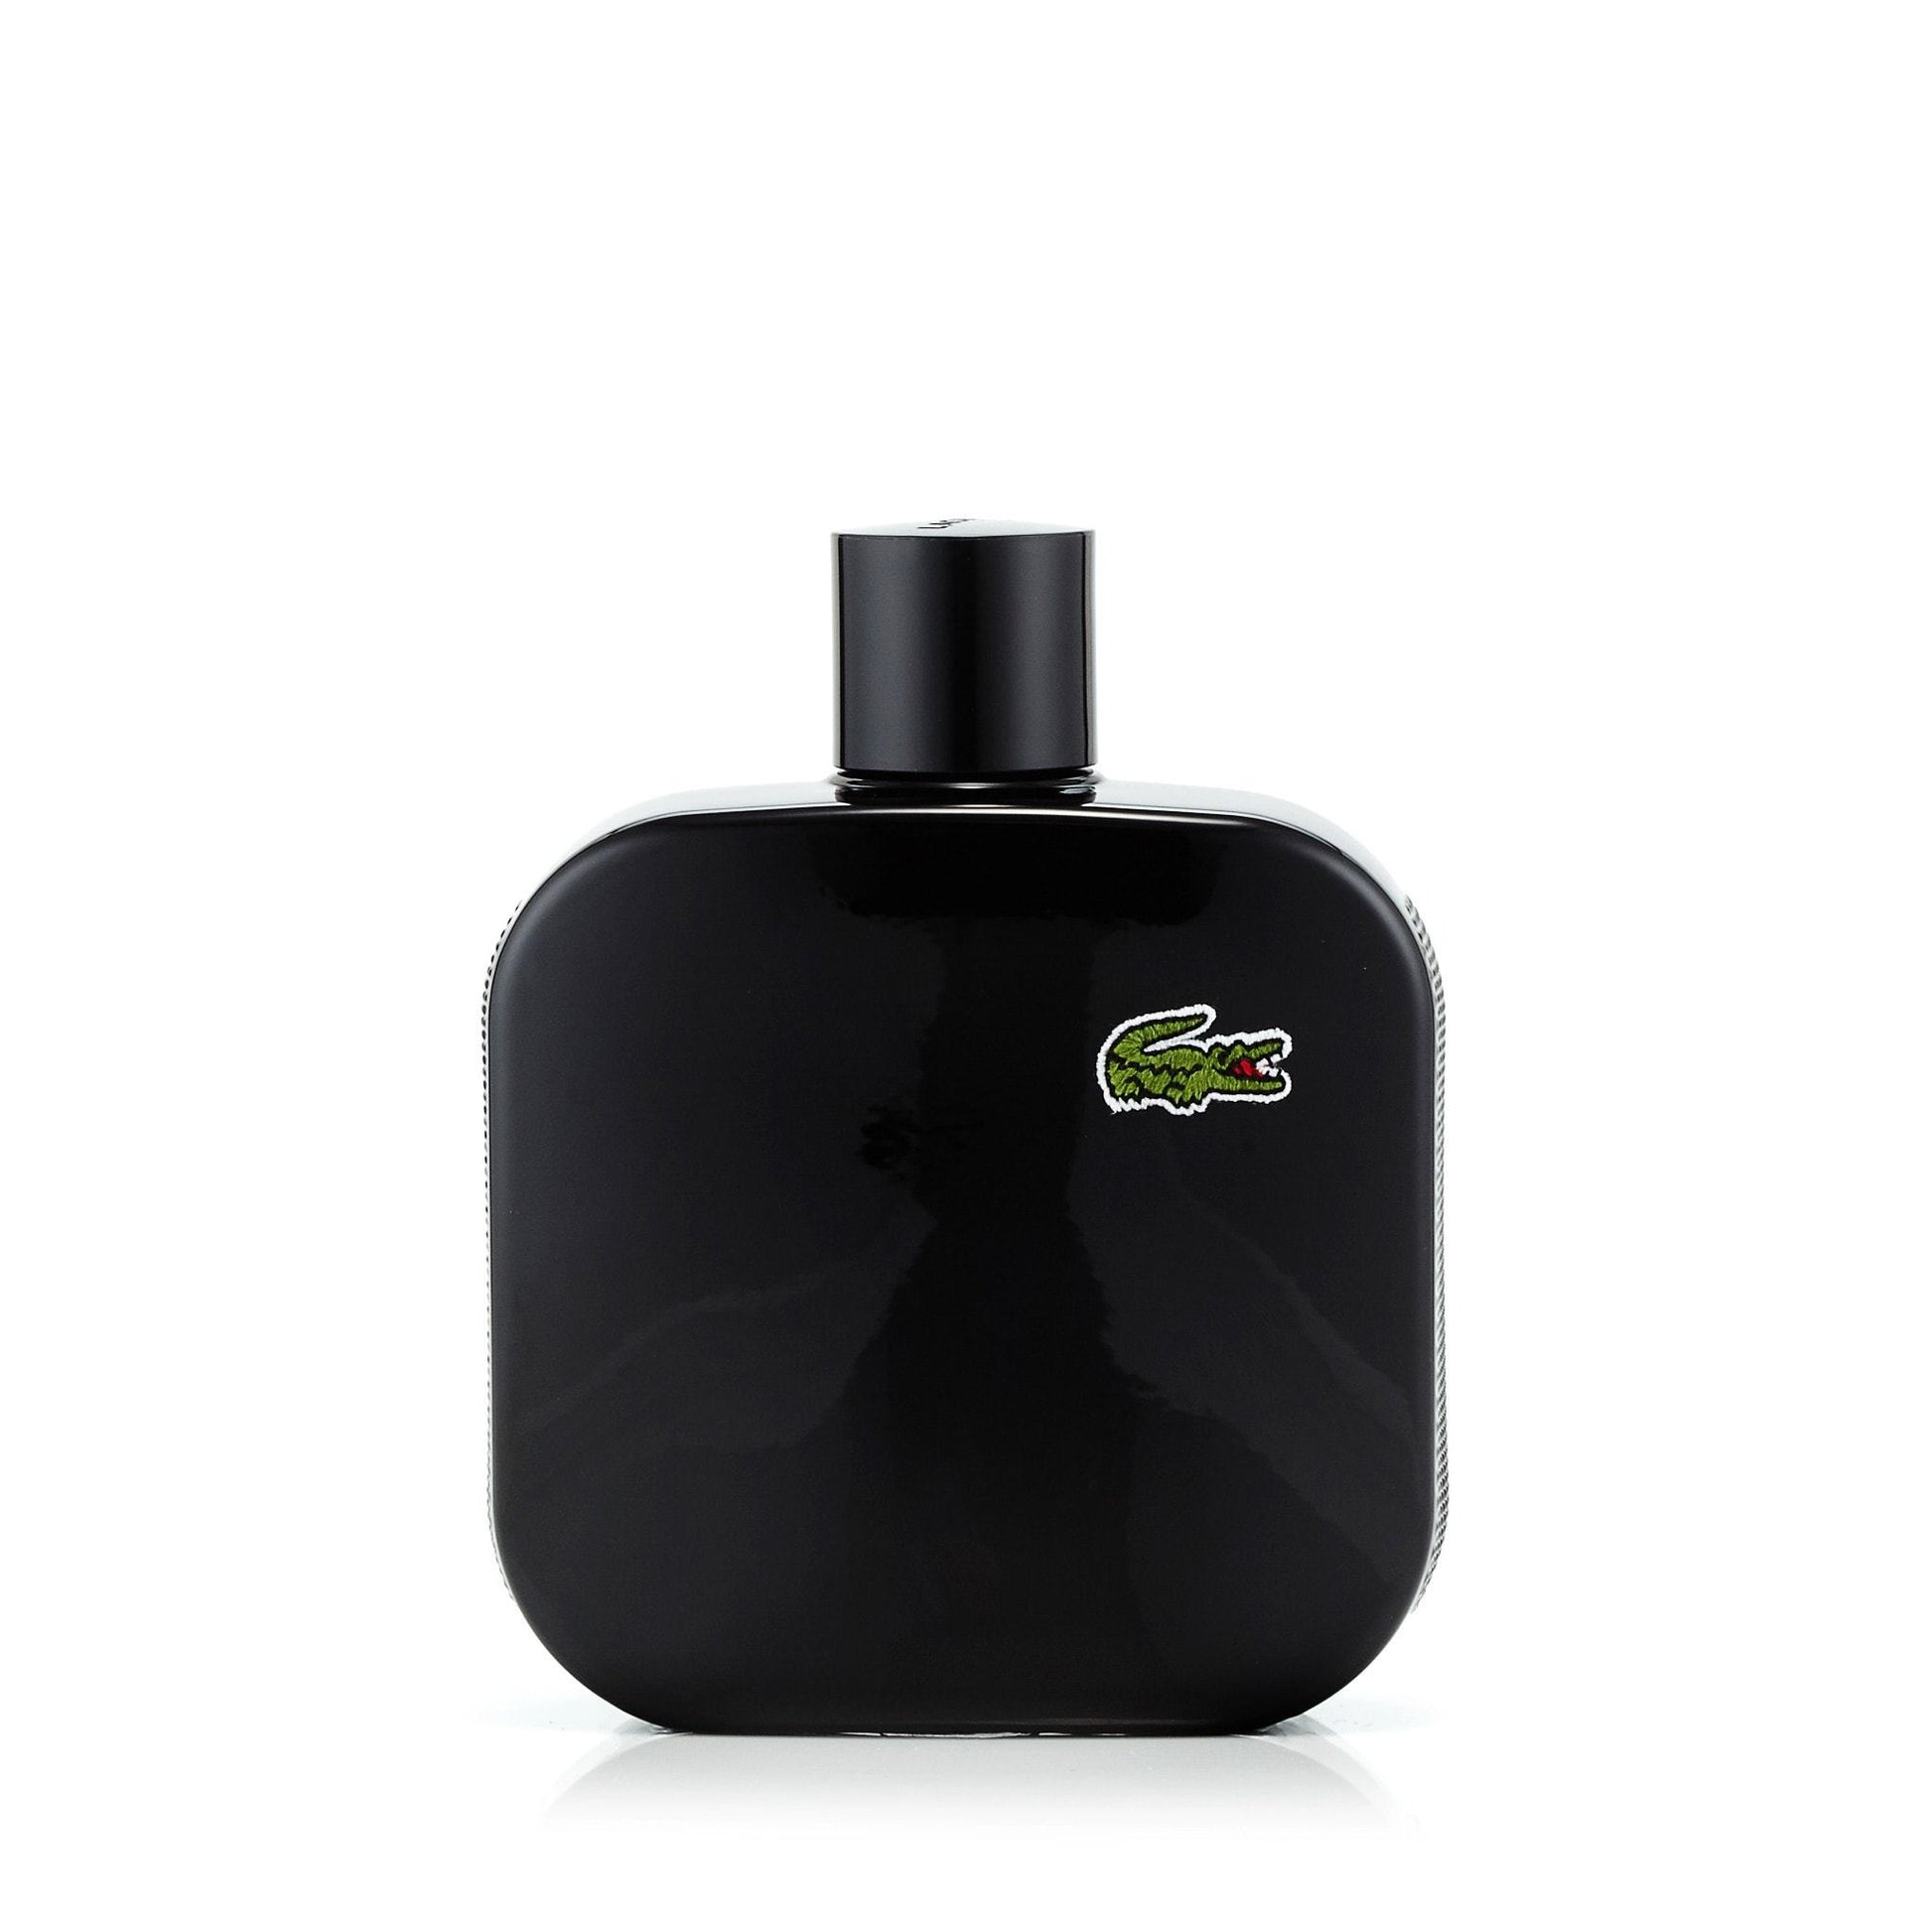 L.12.12 Noir Eau de Toilette Spray for Men by Lacoste, Product image 8